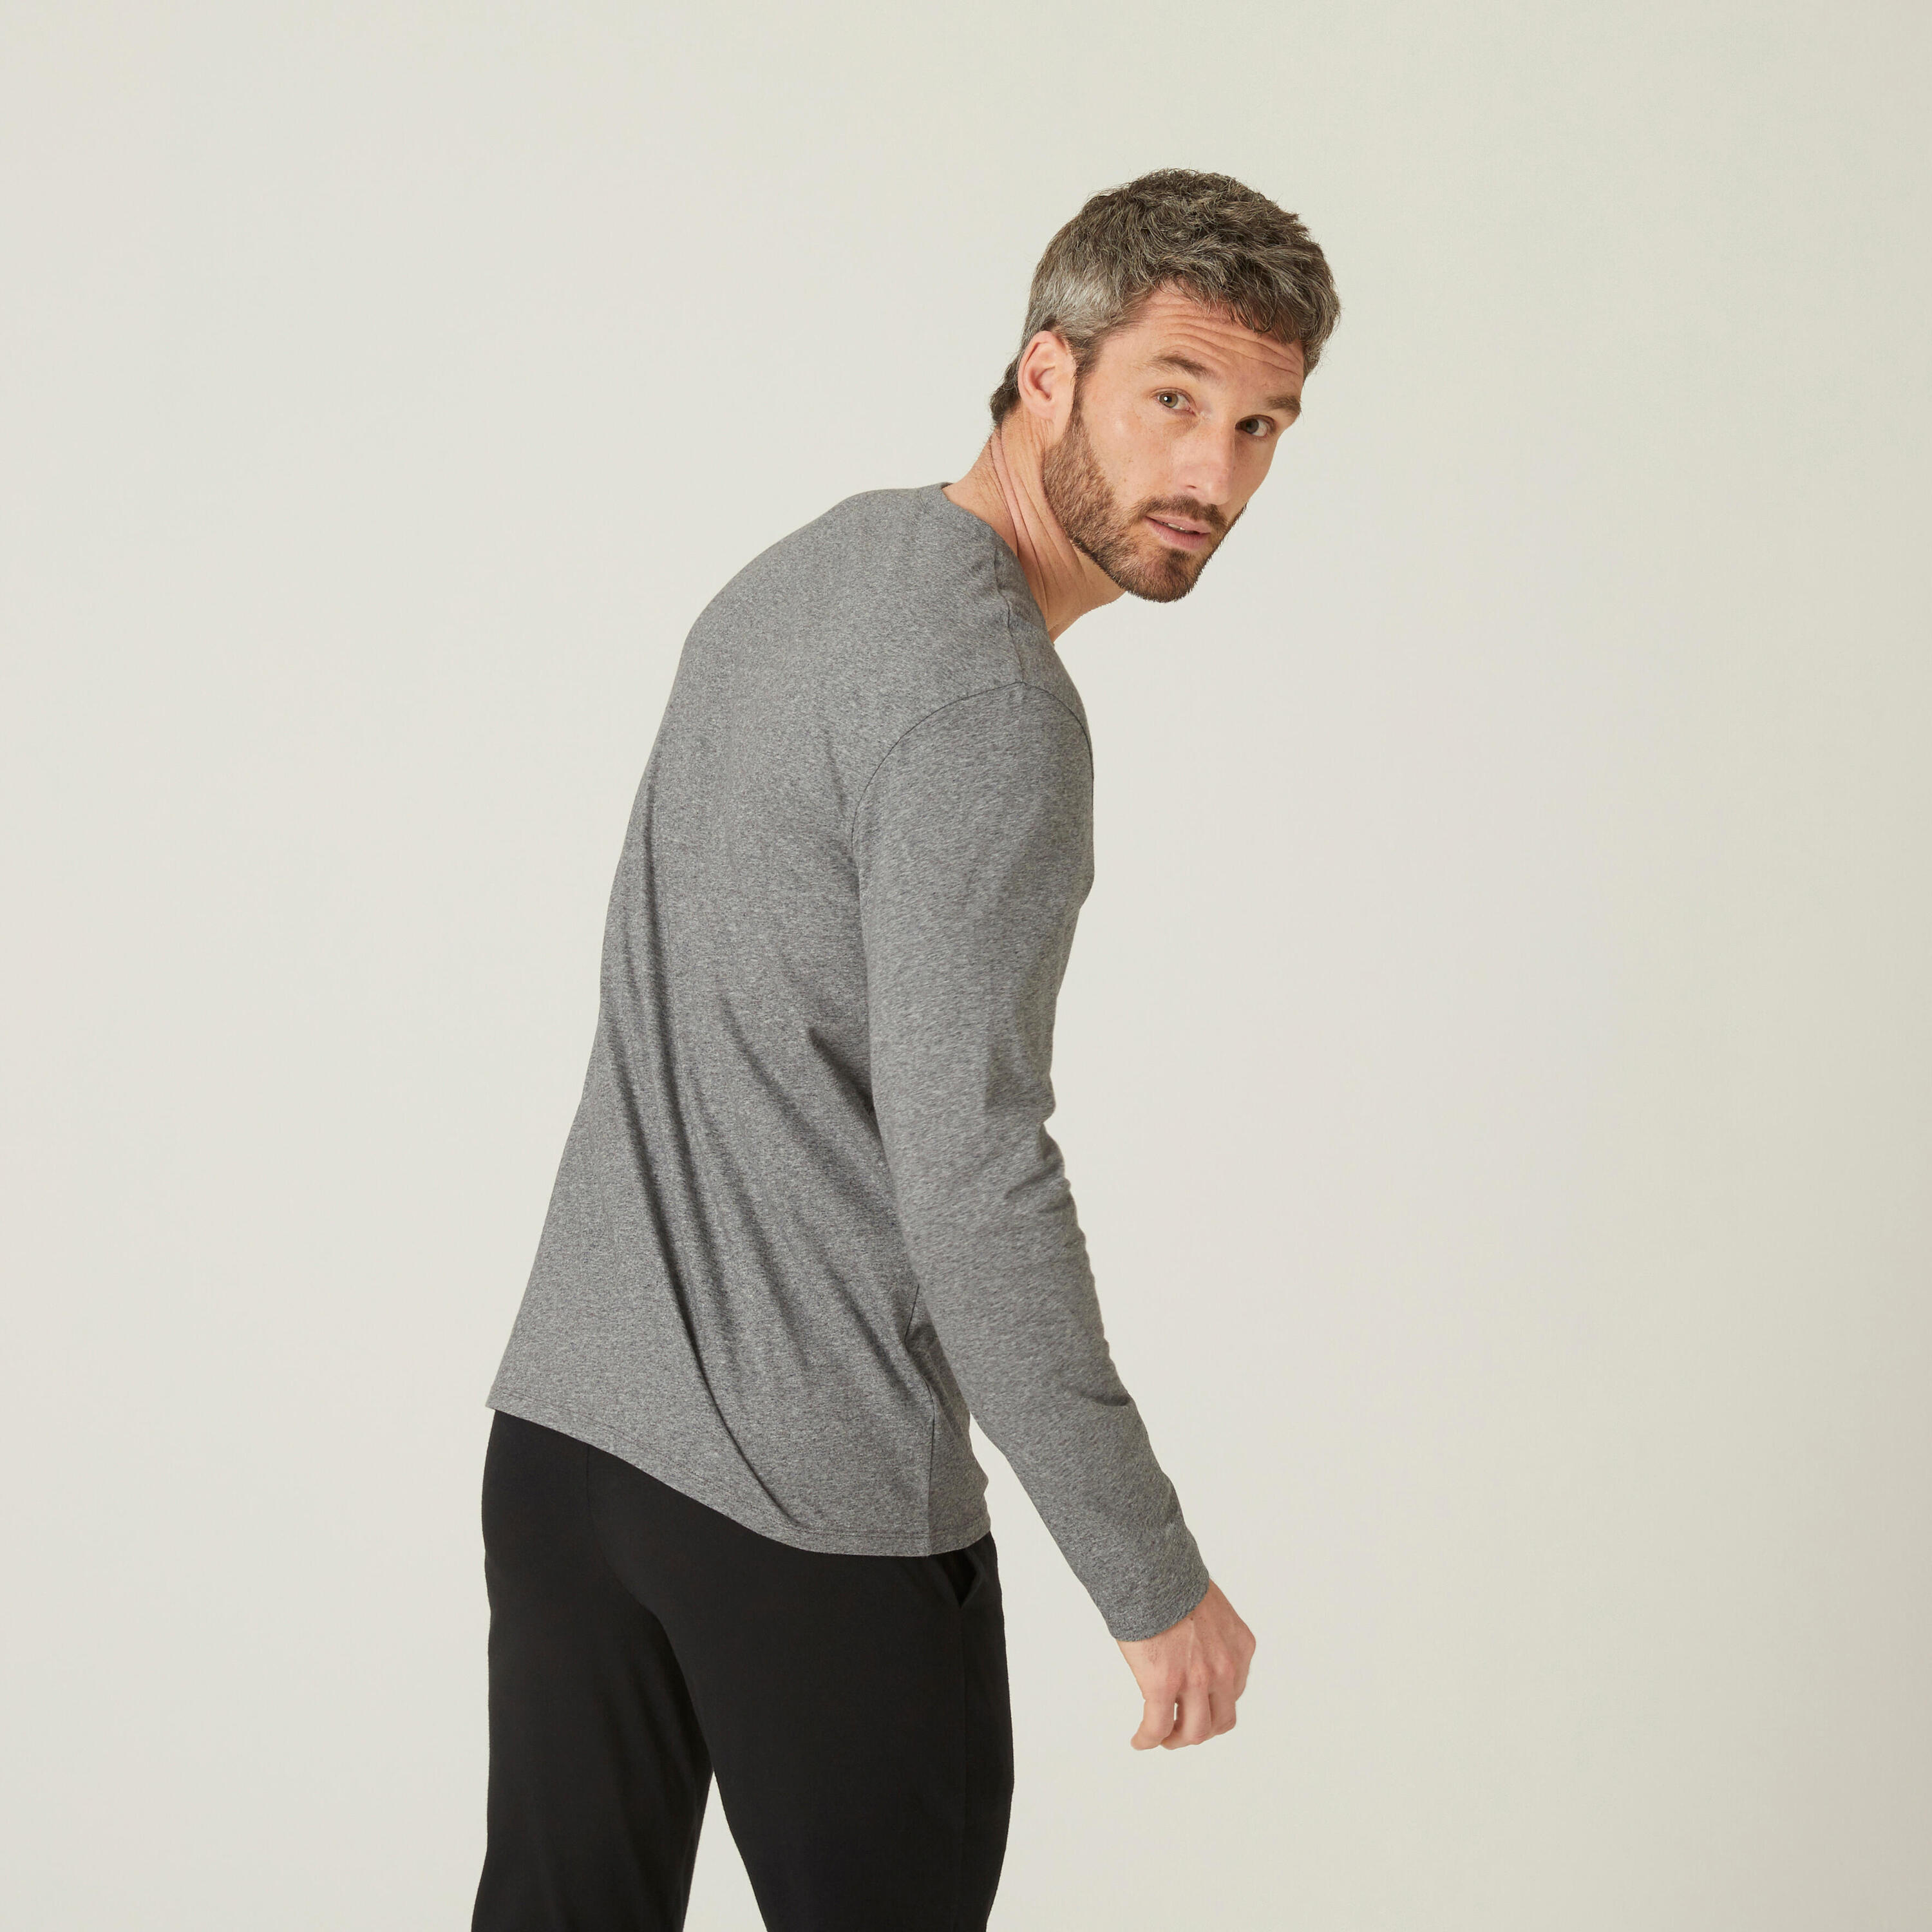 Men's Long-Sleeved Fitness T-Shirt 100 - Grey 2/5